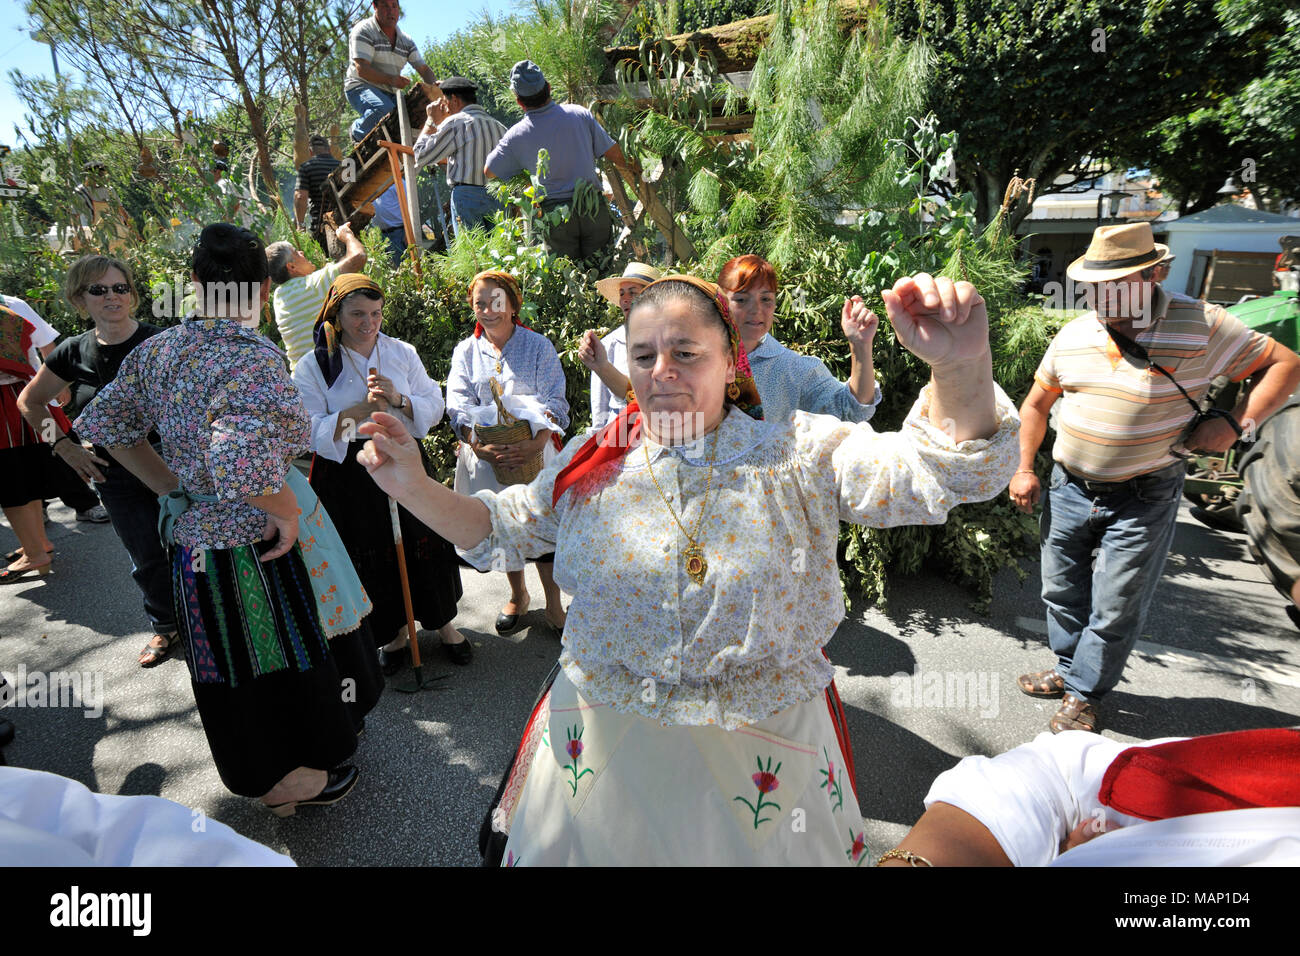 Unsere Liebe Frau von Agonie Festlichkeiten, die größte traditionelle Festivals in Portugal. Viana do Castelo. Stockfoto